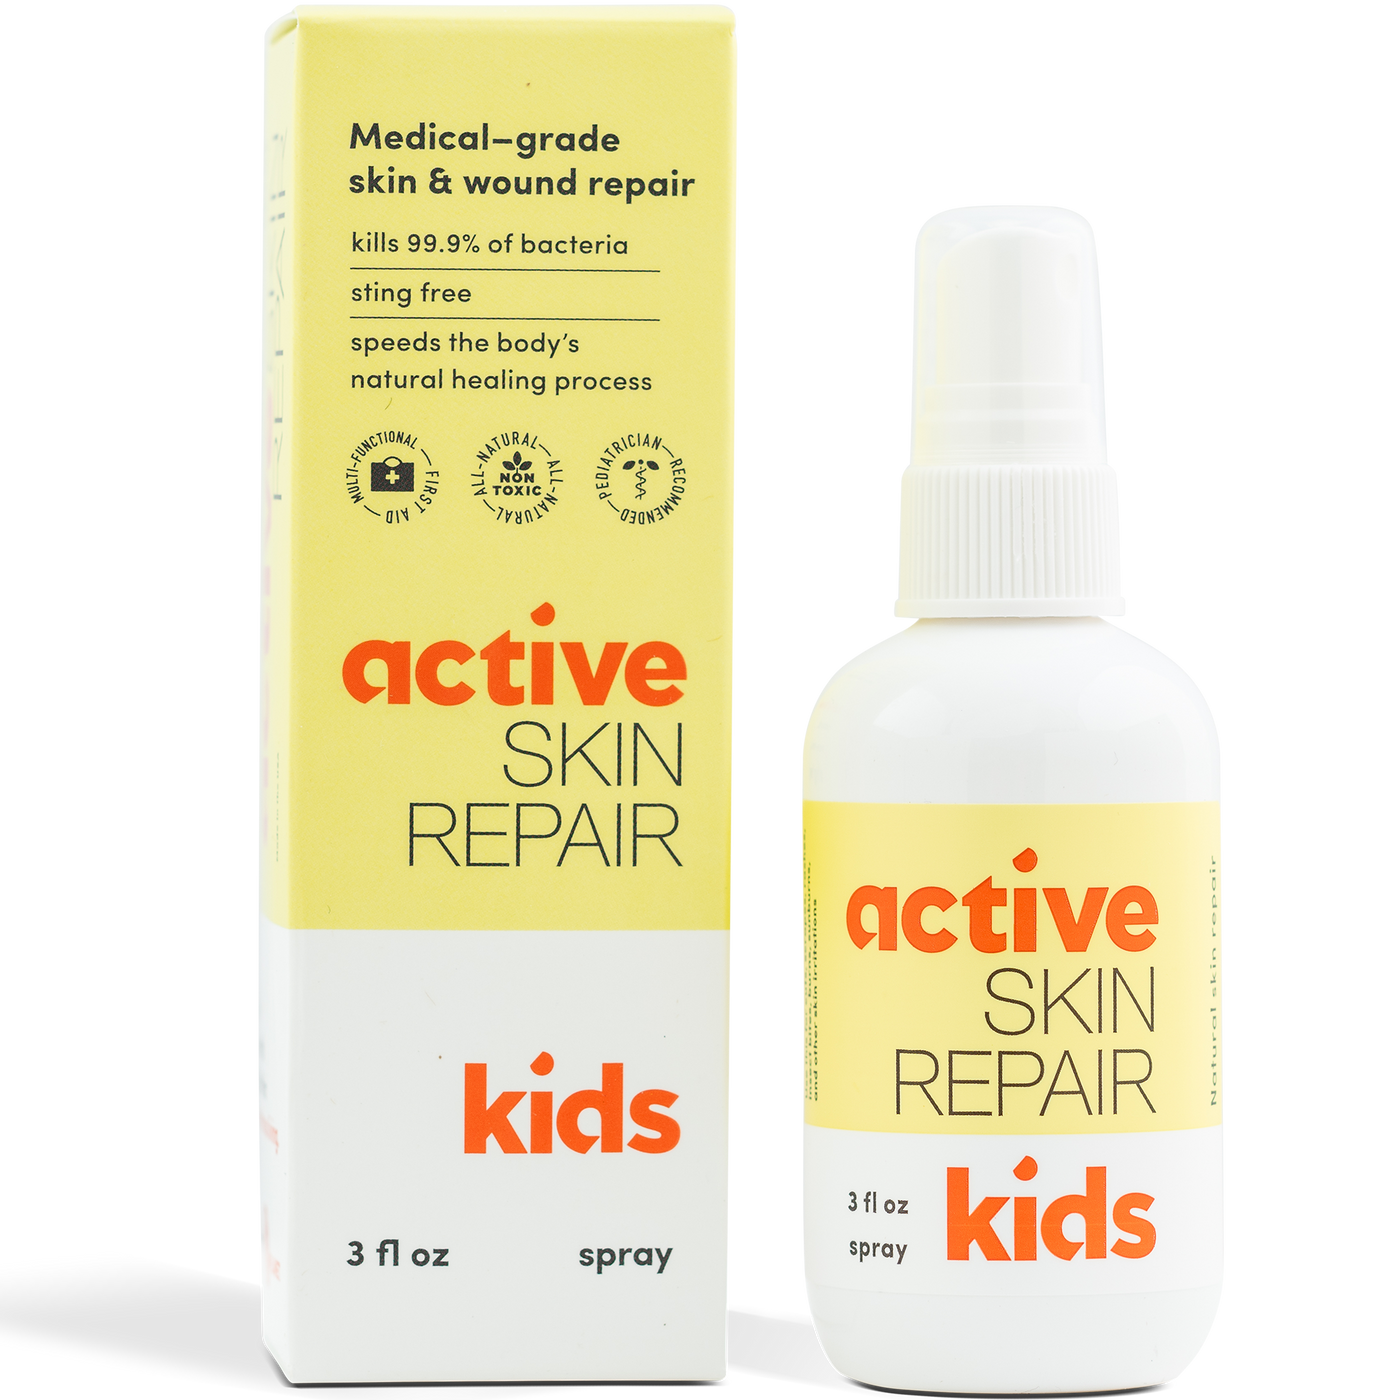 Active Skin Repair Kids 3 fl oz Curated Wellness